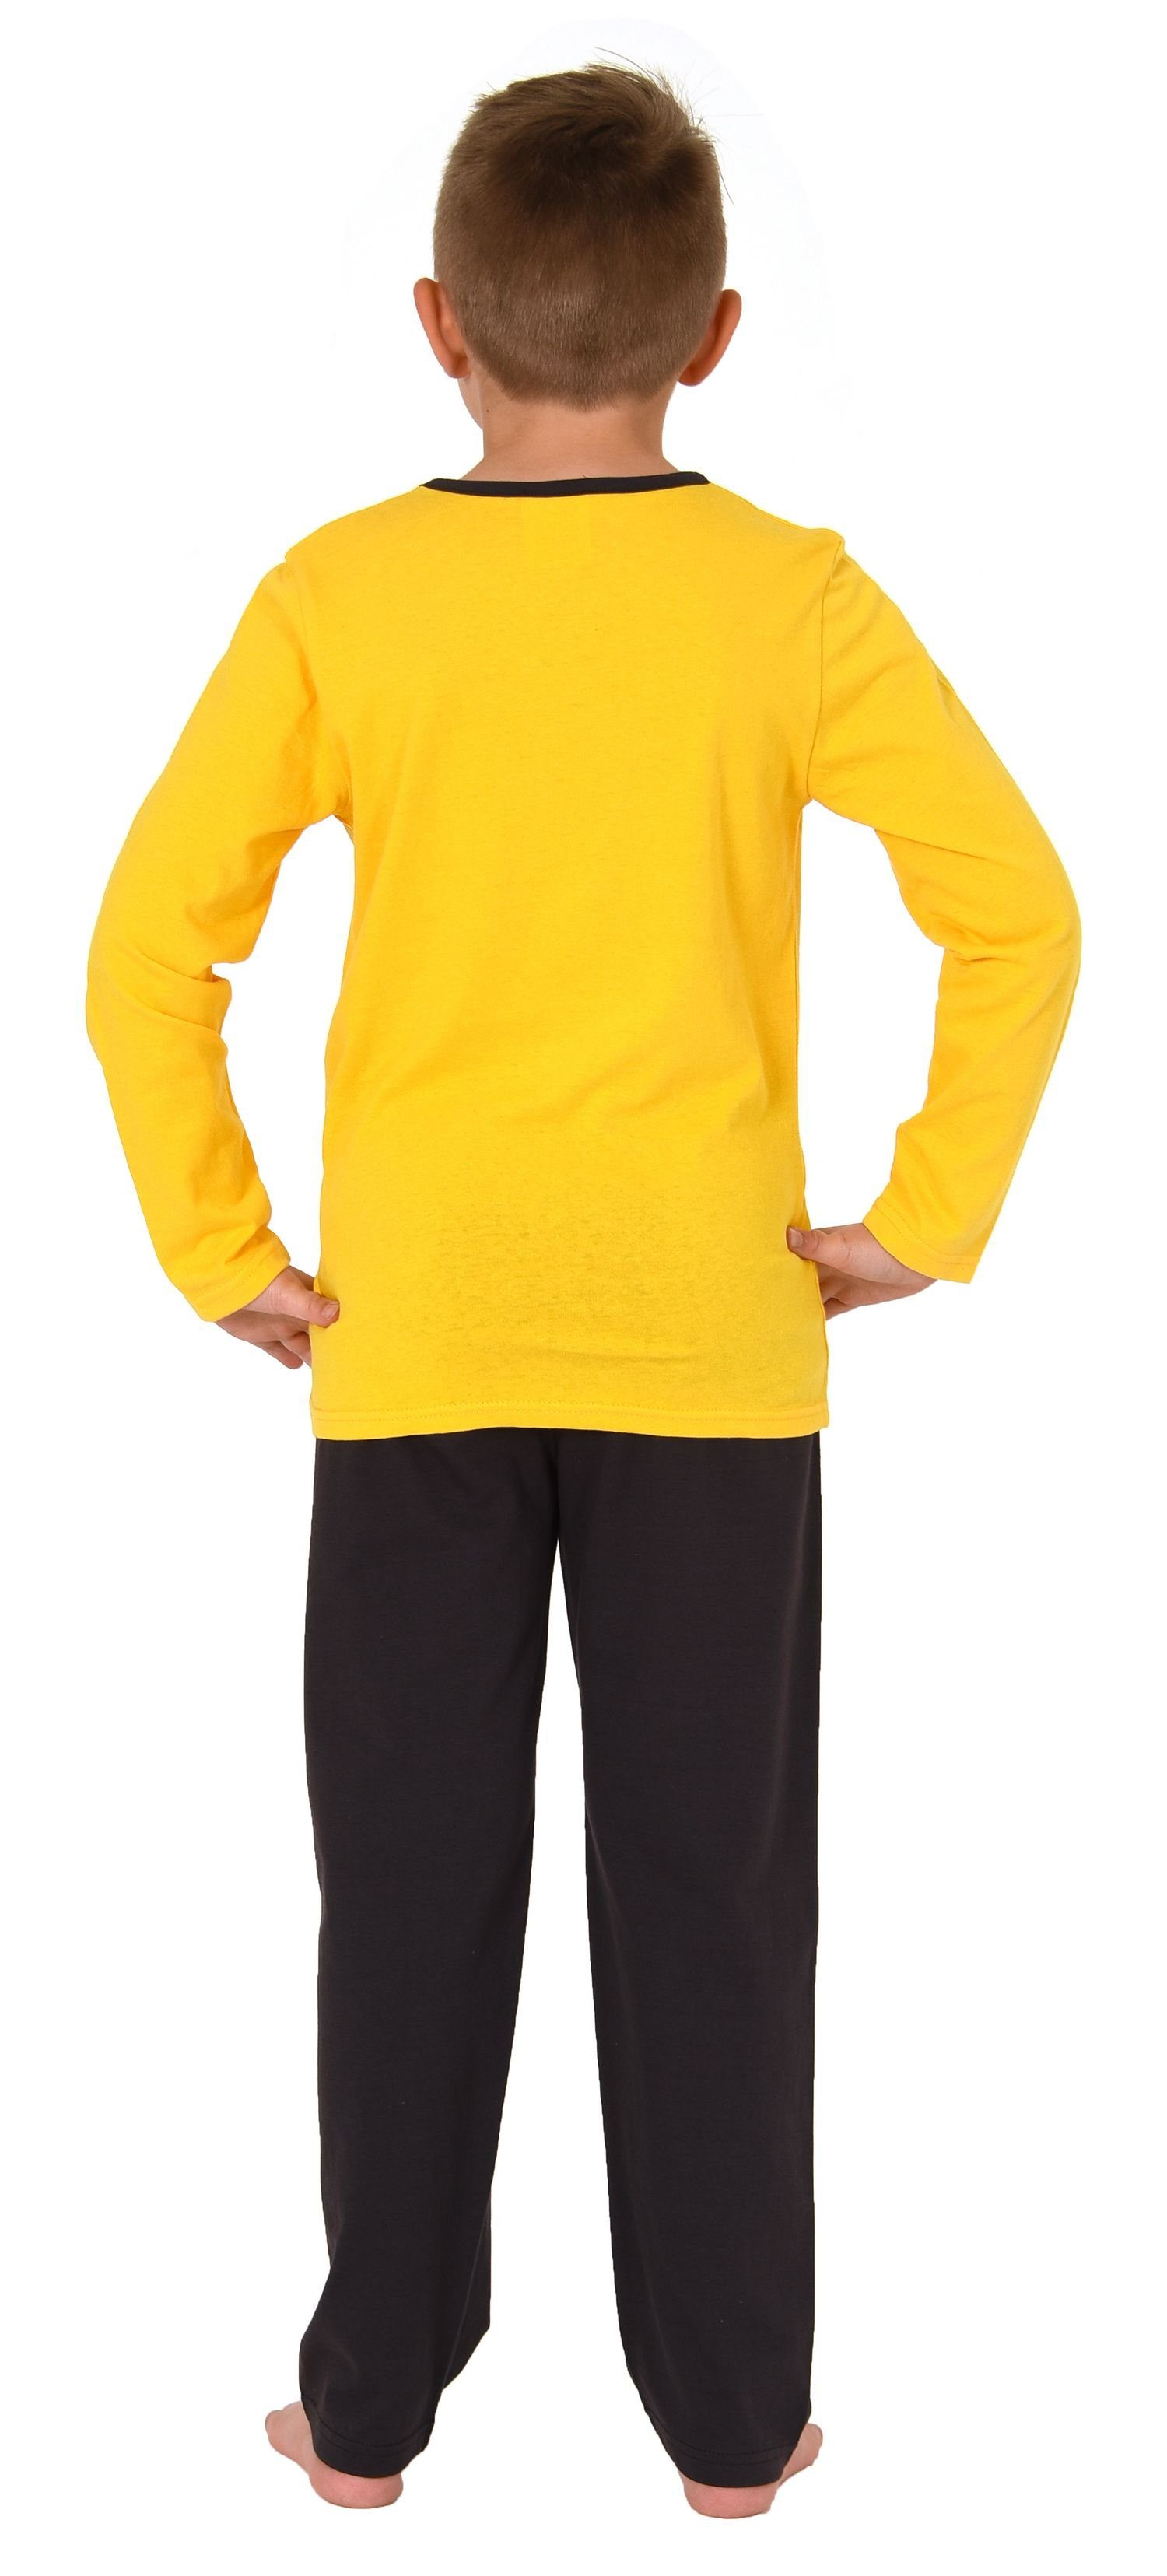 Normann Pyjama Jungen in langarm coolem und tollen mit gelb Farben Motiv Pyjama